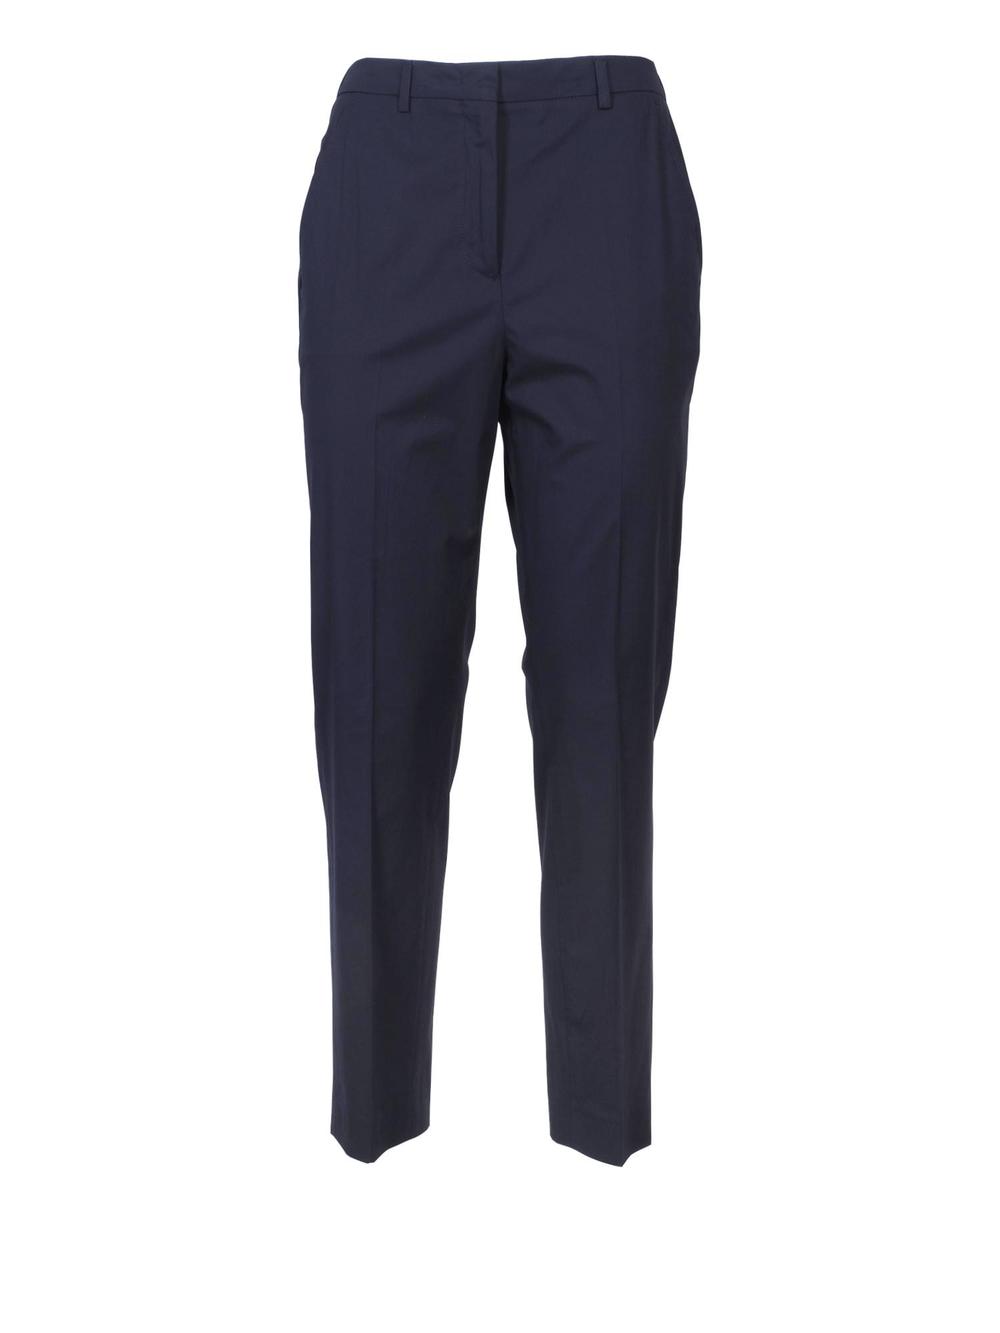 Incotex - Pantalone GALENE In Cotone Donna Blu - 172728-D6202 820